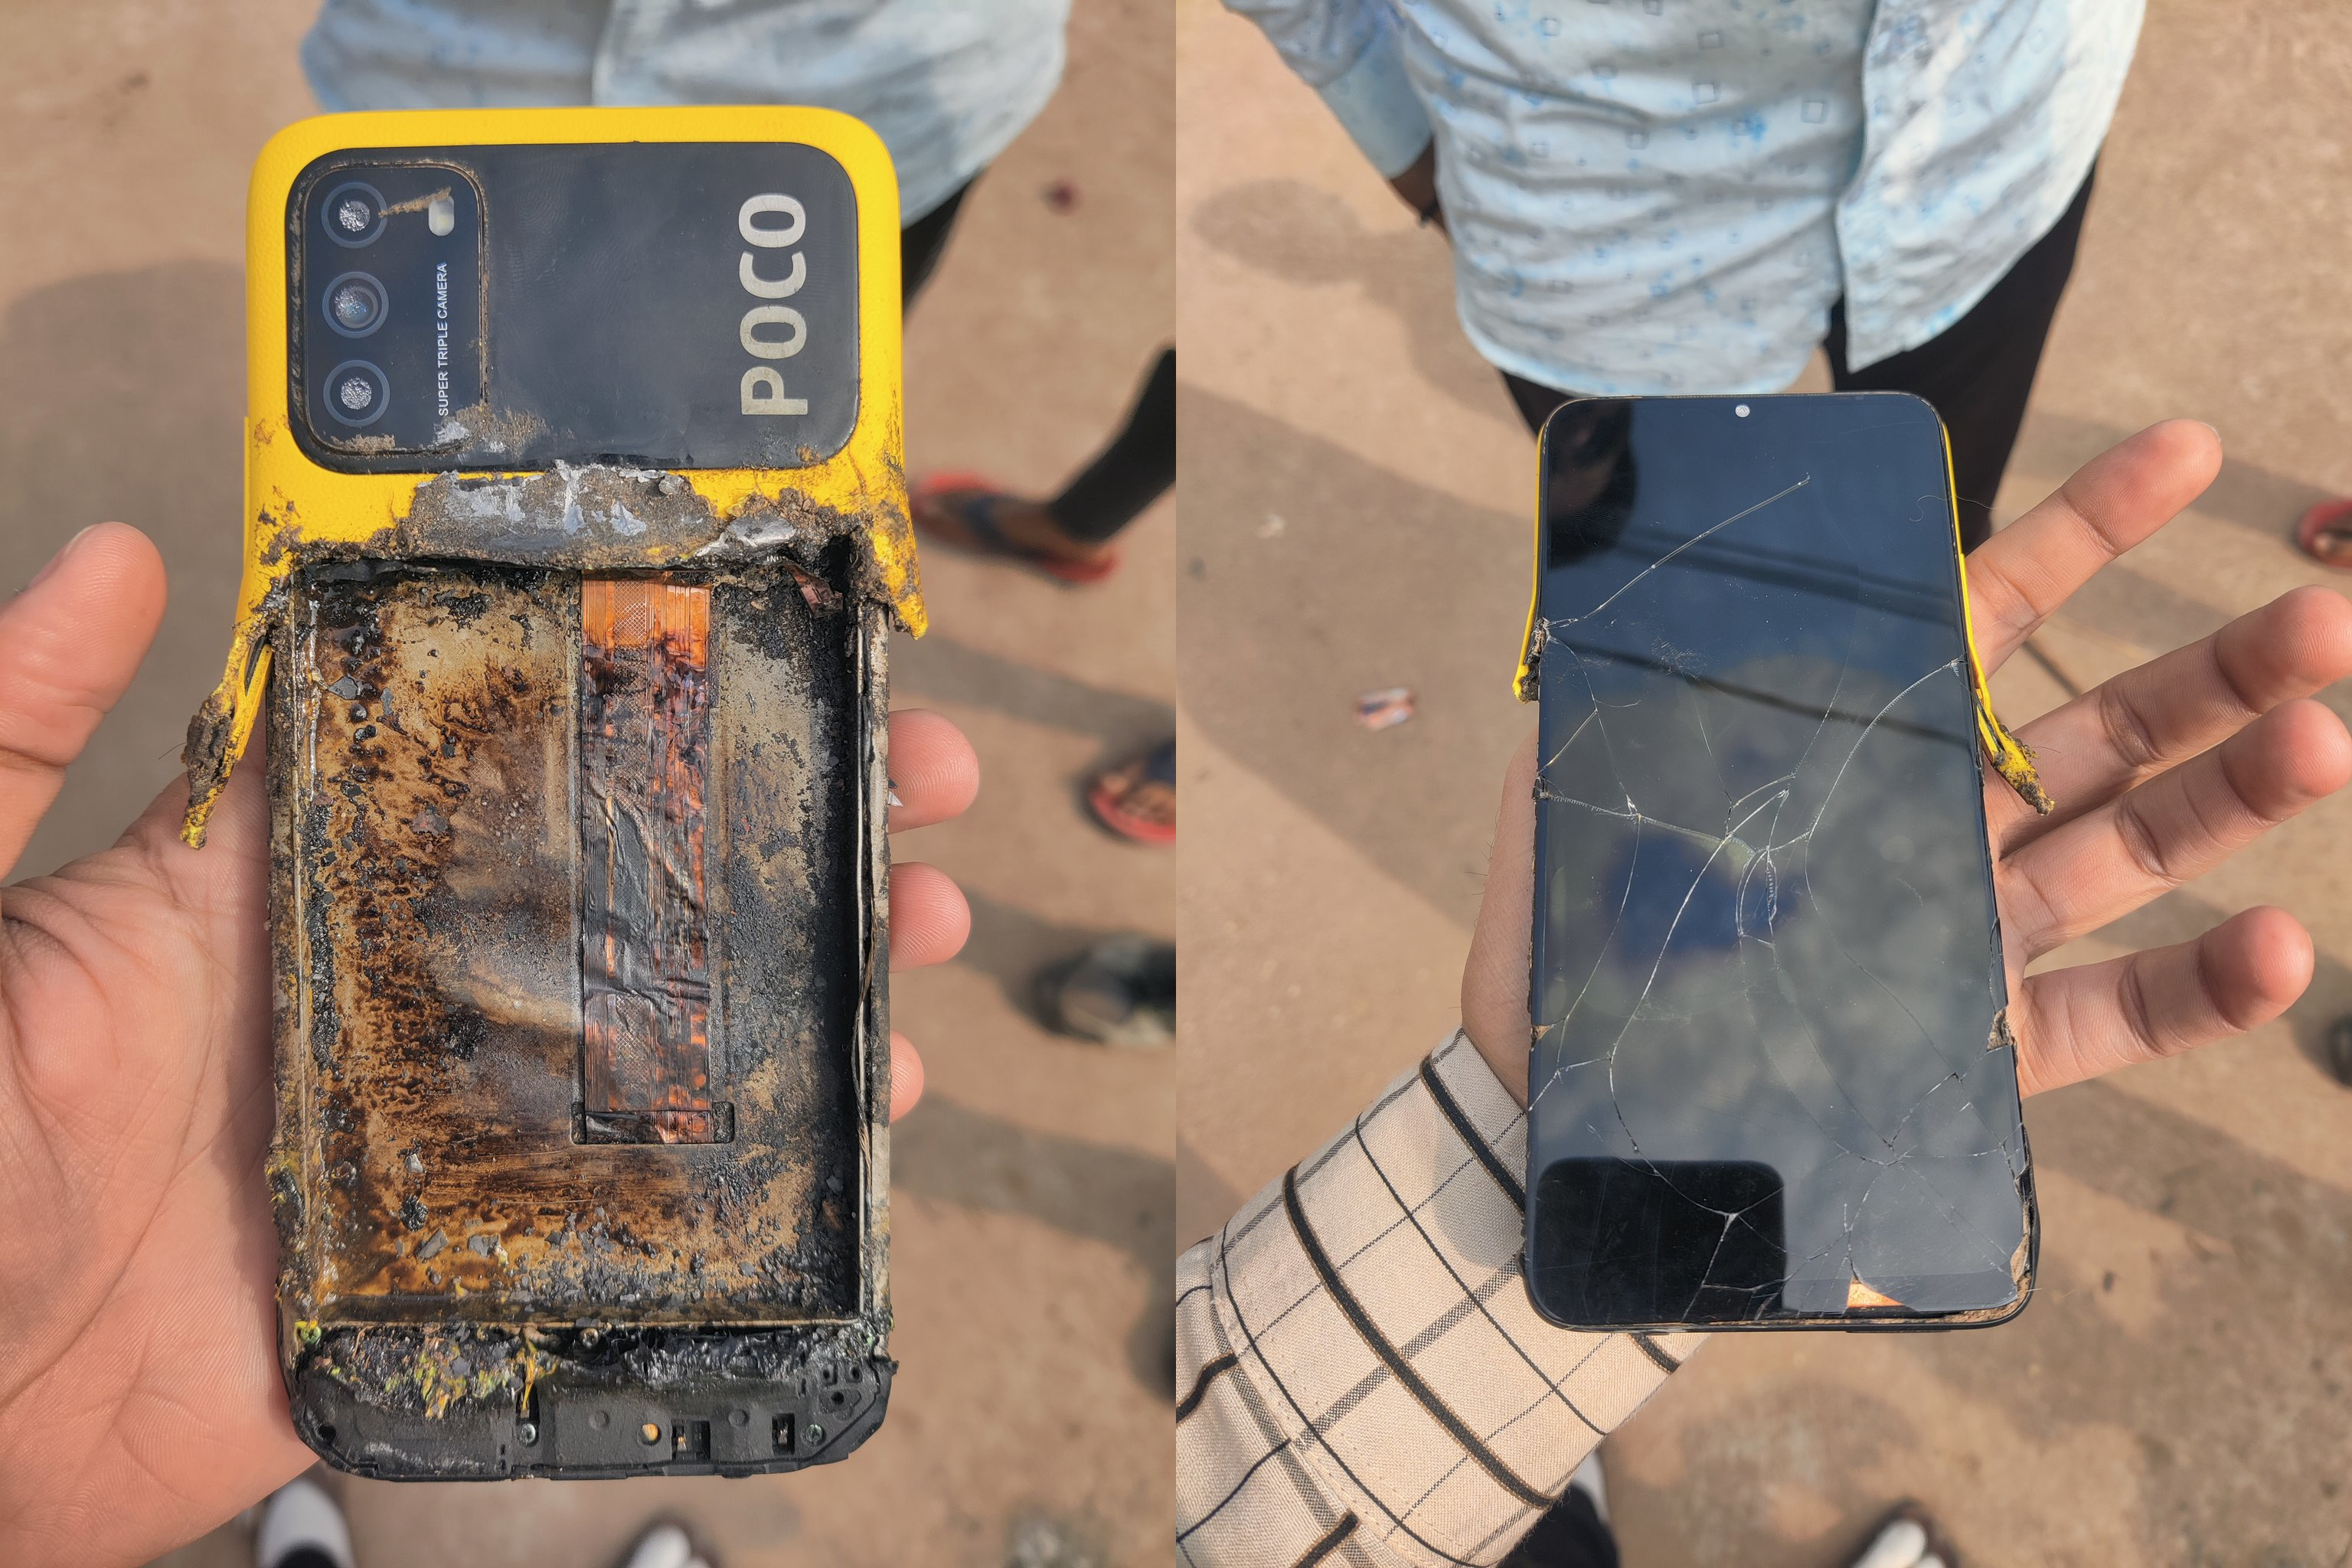 "Questo è il peggior servizio e test di qualità": è esploso un altro smartphone della sottomarca Xiaomi - Poco M3